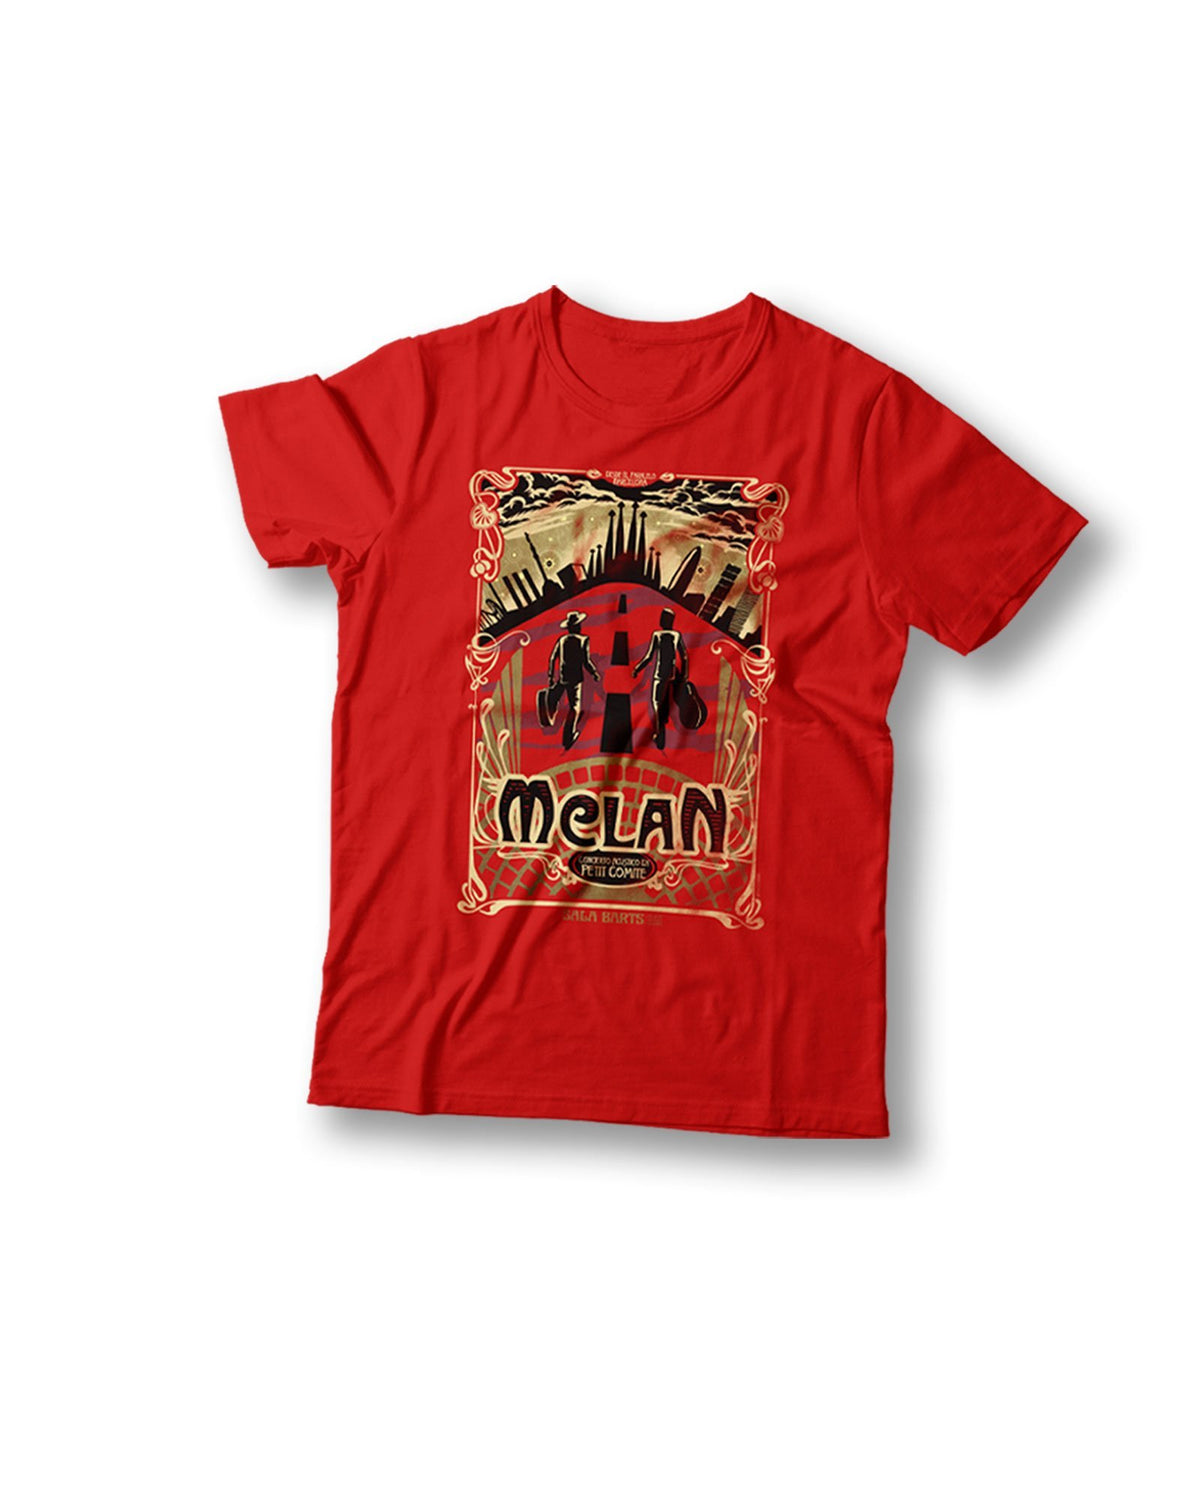 Camiseta Edición Especial "Concierto Acústico En Petit Comité" (Color Rojo) - M CLAN - Rocktud - m-clan